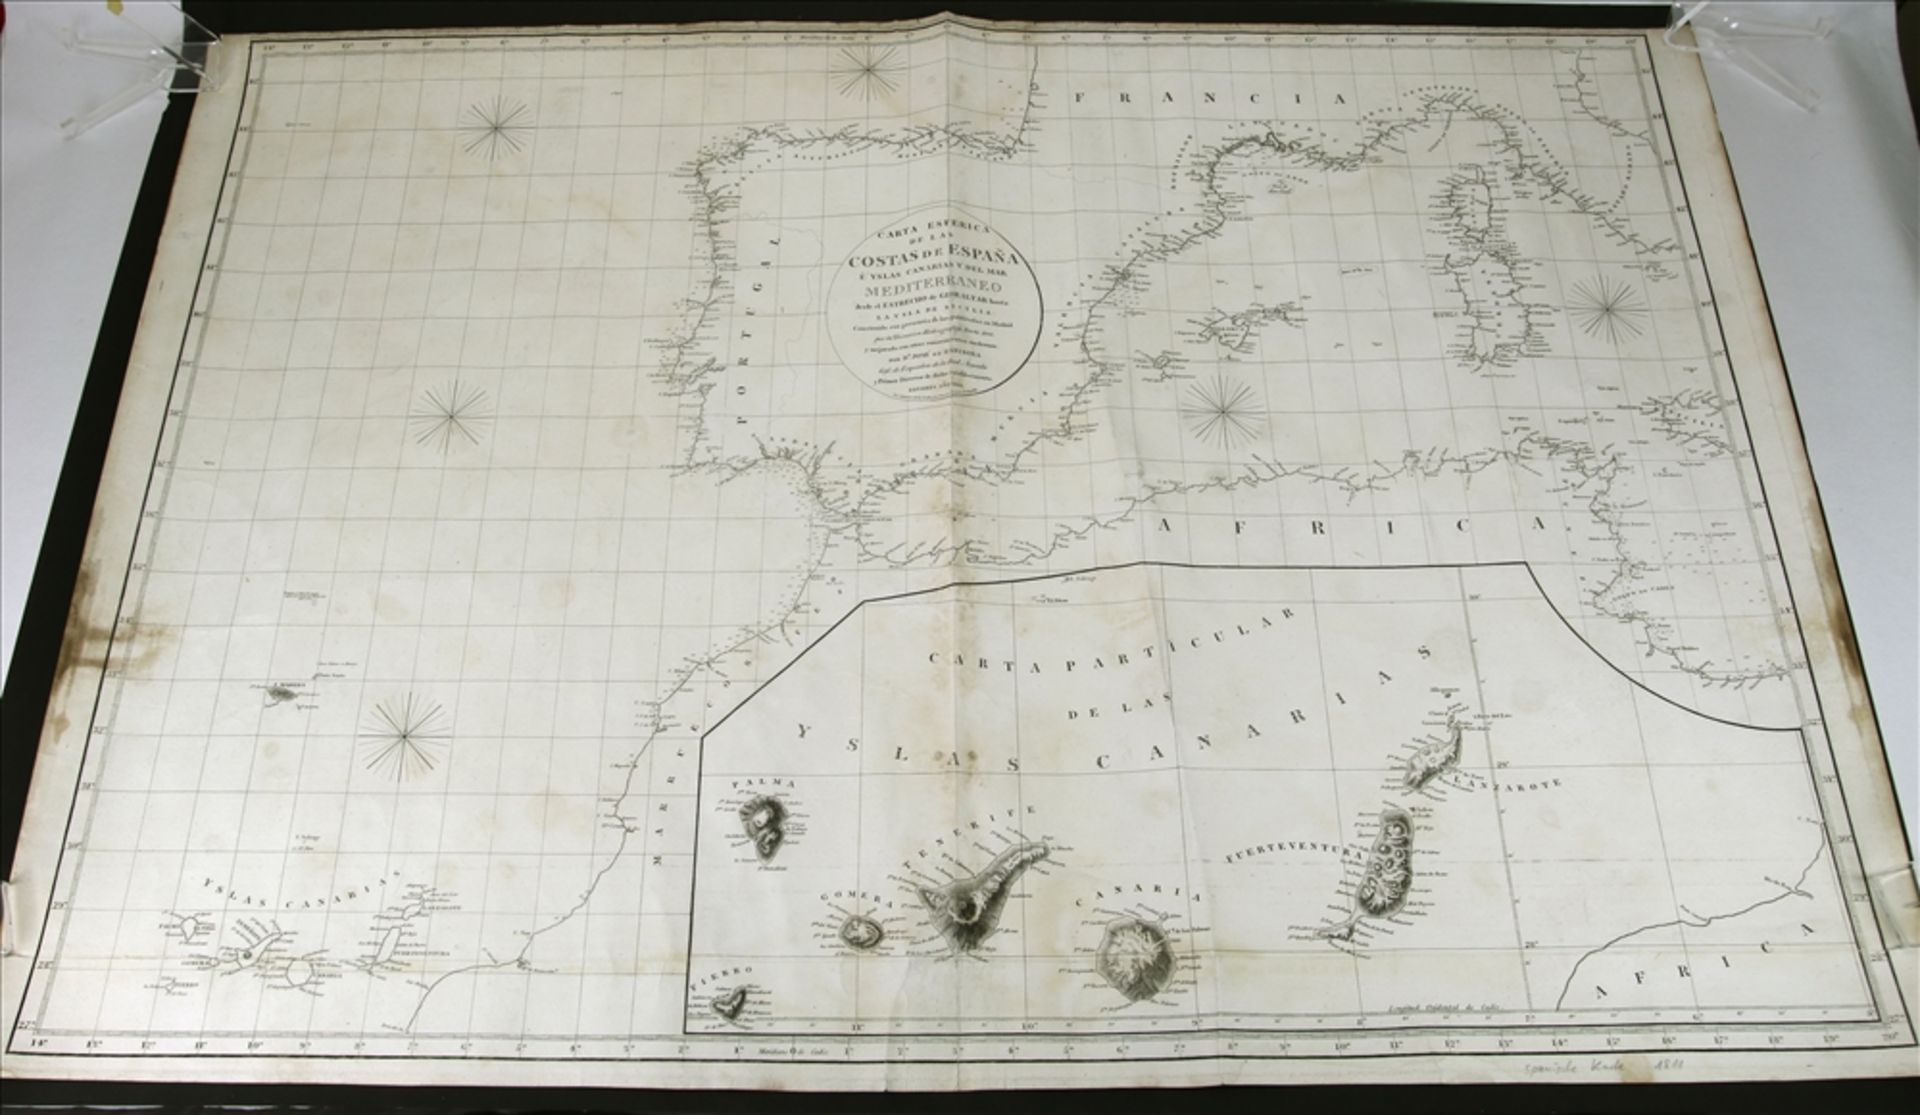 Seekarte der spanischen Küsten und der kanarischen Inseln etc. "Carta Esferica de las Costas de